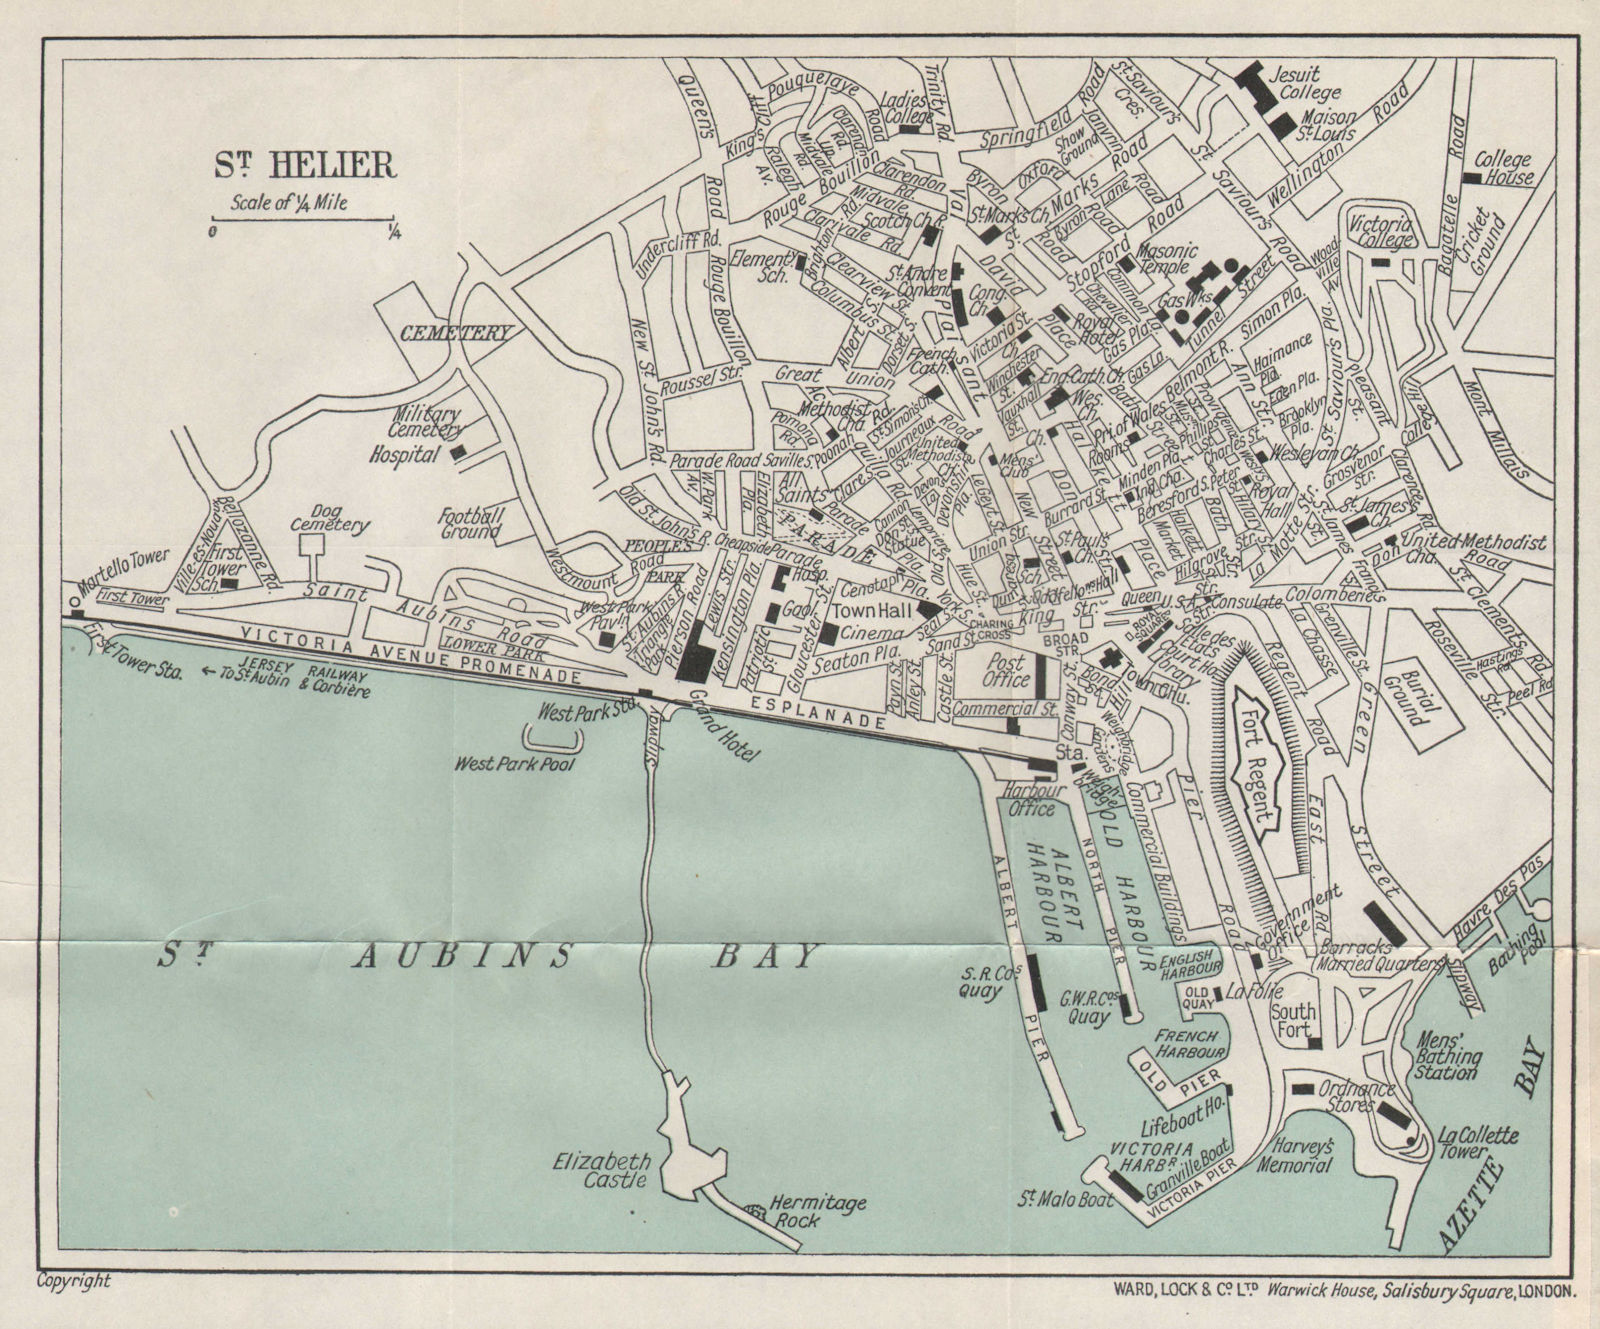 ST. HELIER vintage town city plan. Jersey Channel Islands. WARD LOCK 1934 map